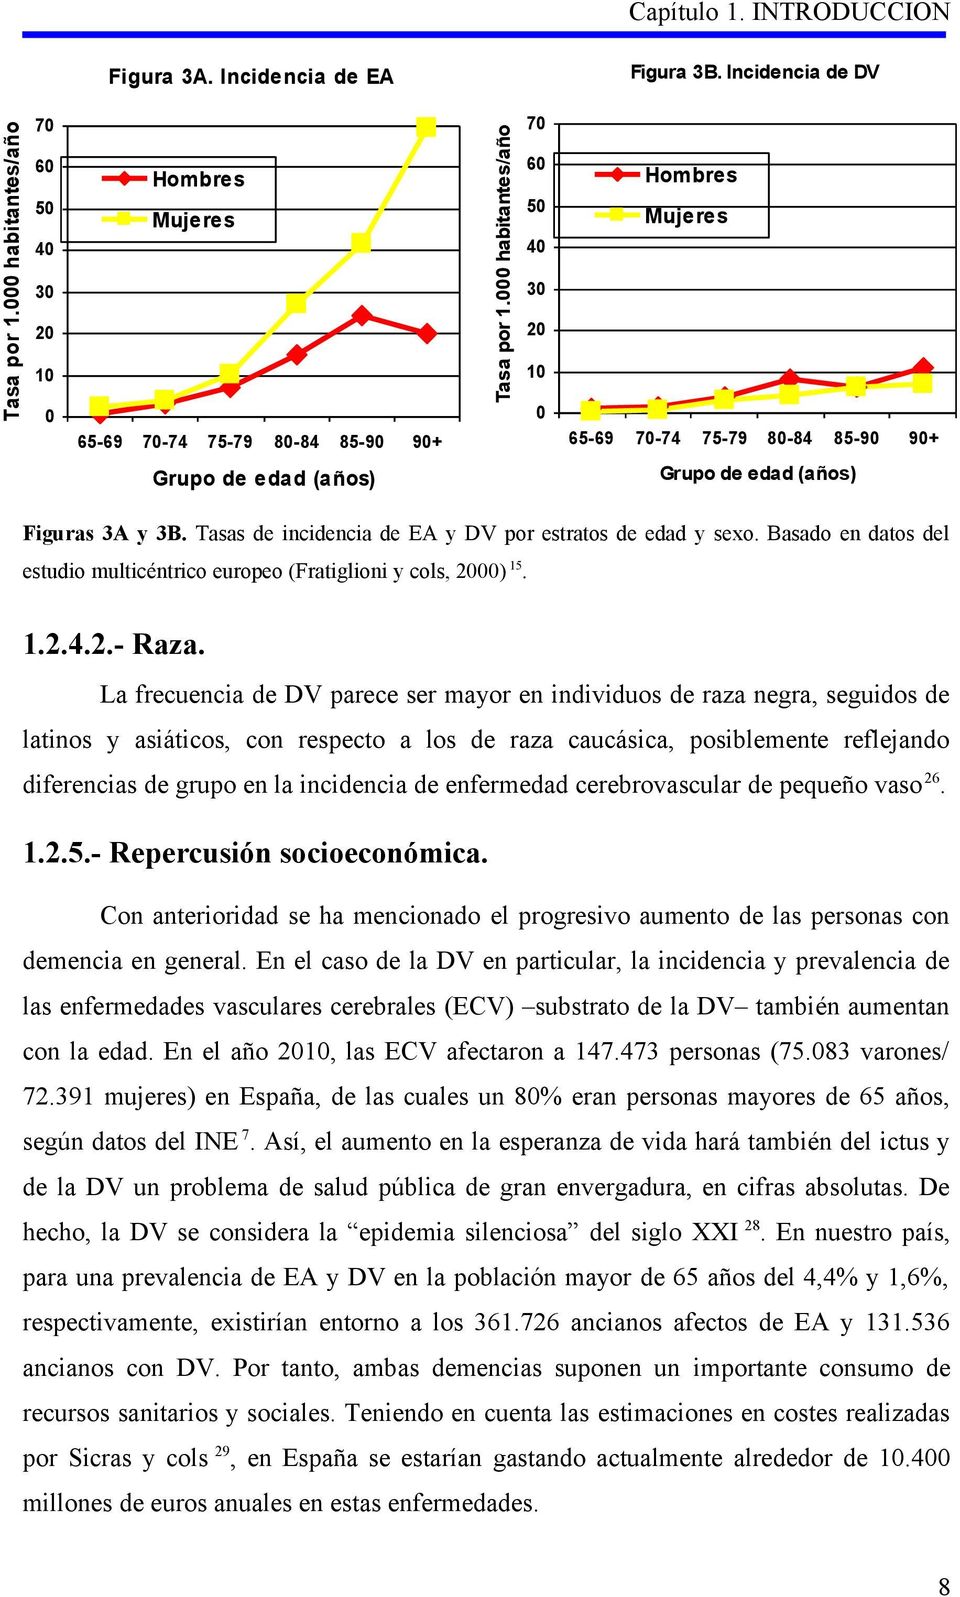 Figuras 3A y 3B. Tasas de incidencia de EA y DV por estratos de edad y sexo. Basado en datos del estudio multicéntrico europeo (Fratiglioni y cols, 2000) 15. 1.2.4.2.- Raza.